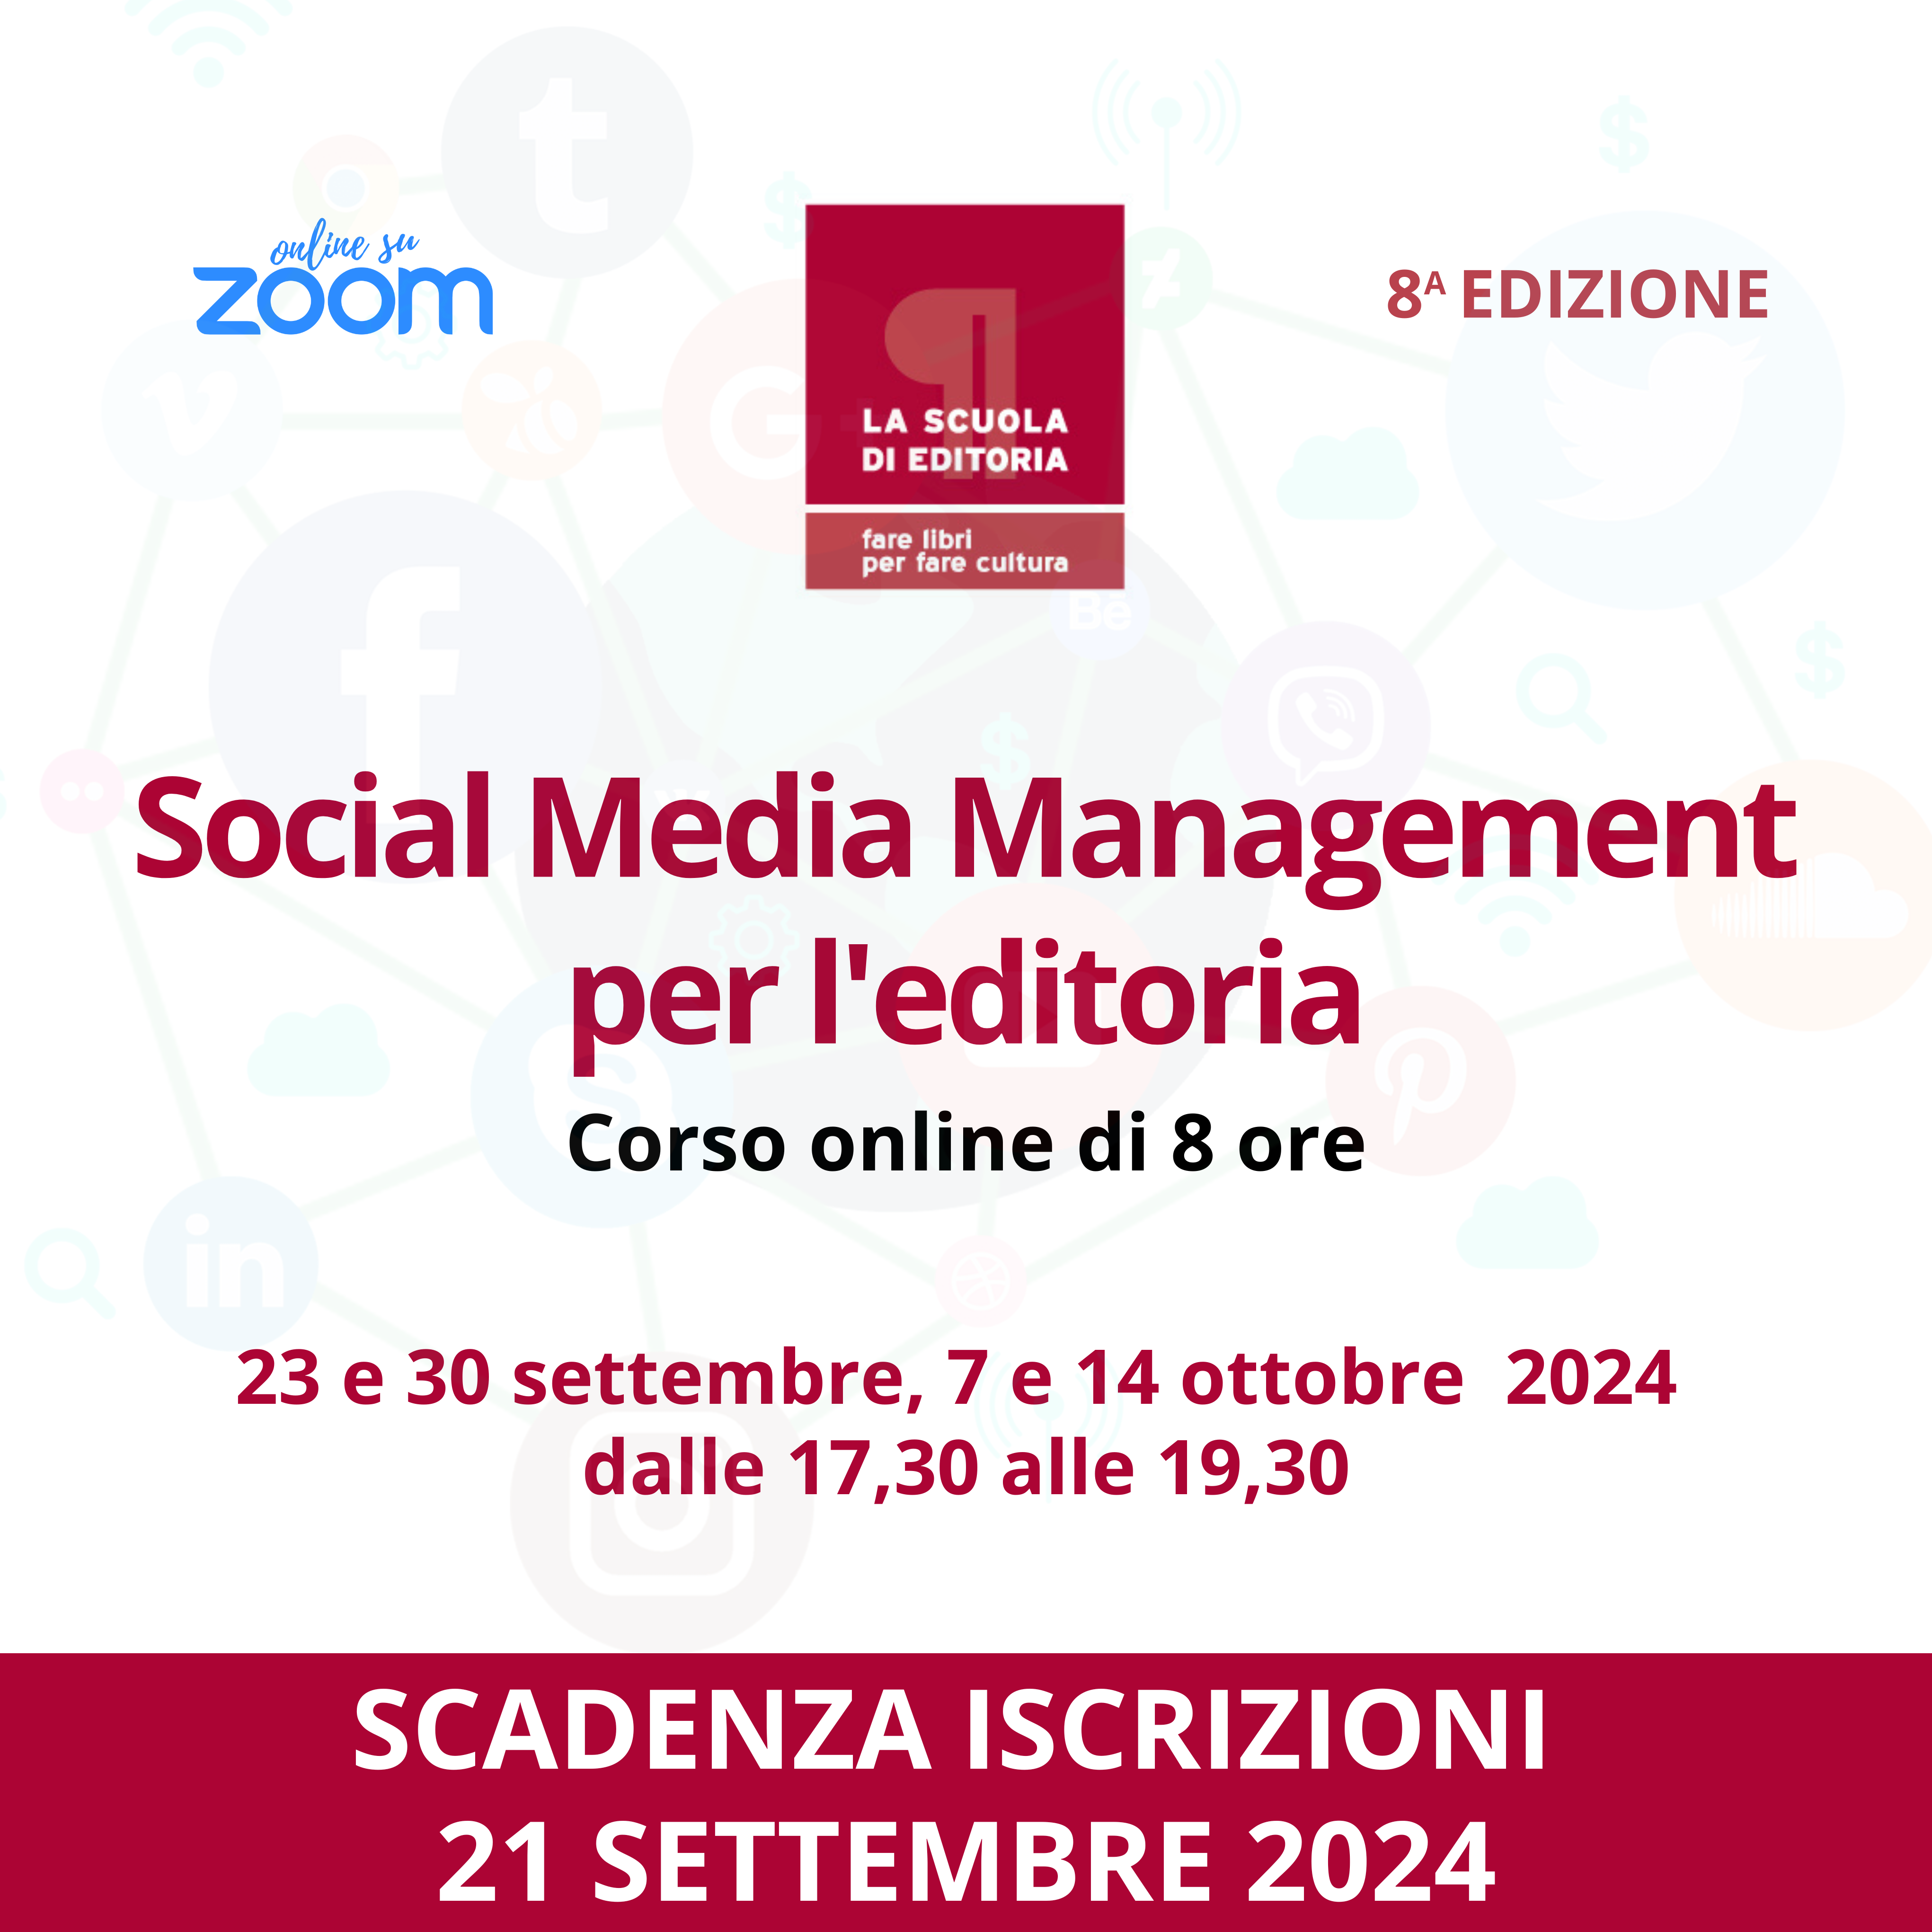 Corso Online “Social Media Management Per L’editoria” – 8a Edizione